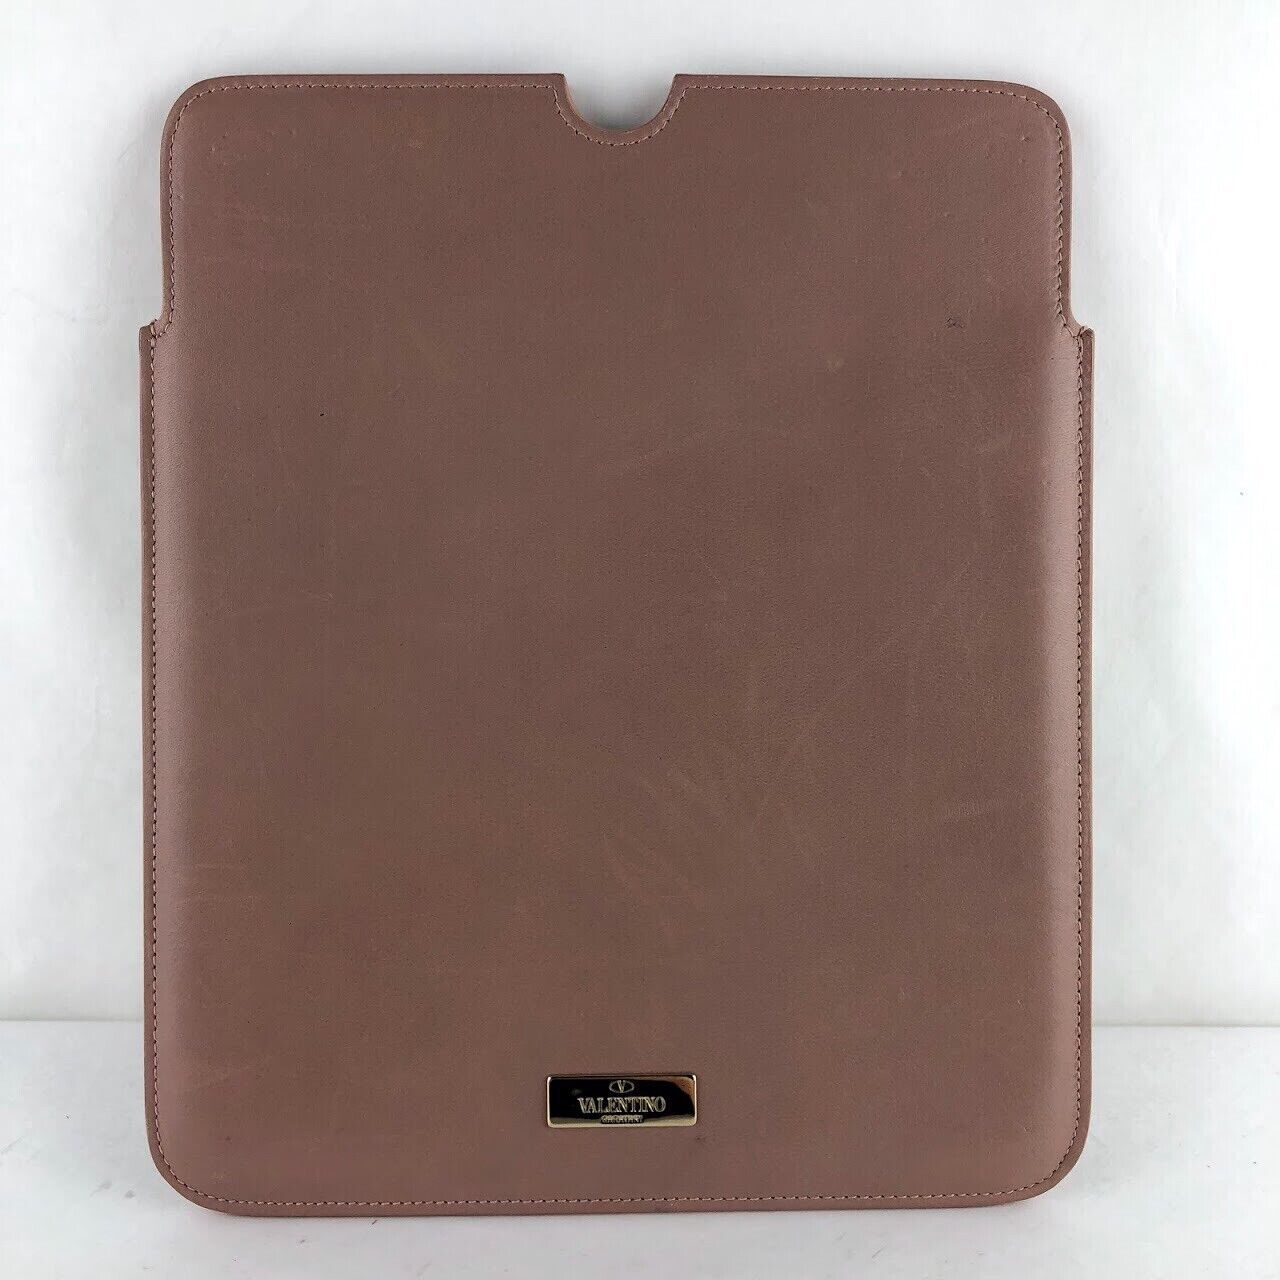 nwt auth VALENTINO GARAVANI blush pink leather ROCKSTUD ipad/tablet Sleeve $650